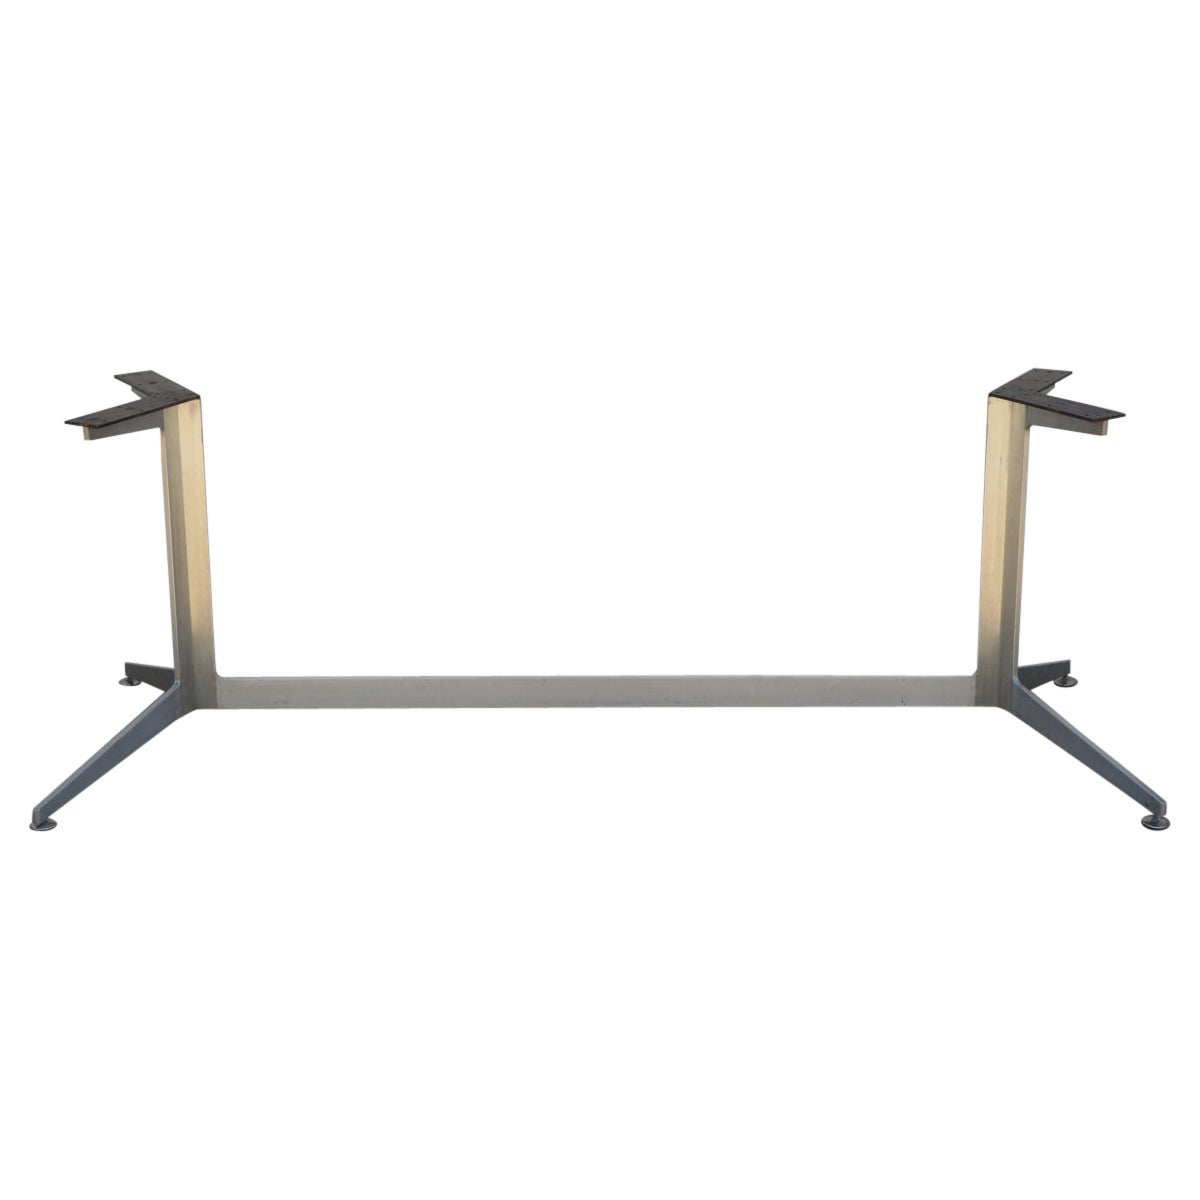 Single Minimalistic Heavy Polished Aluminum Table or Desk Base